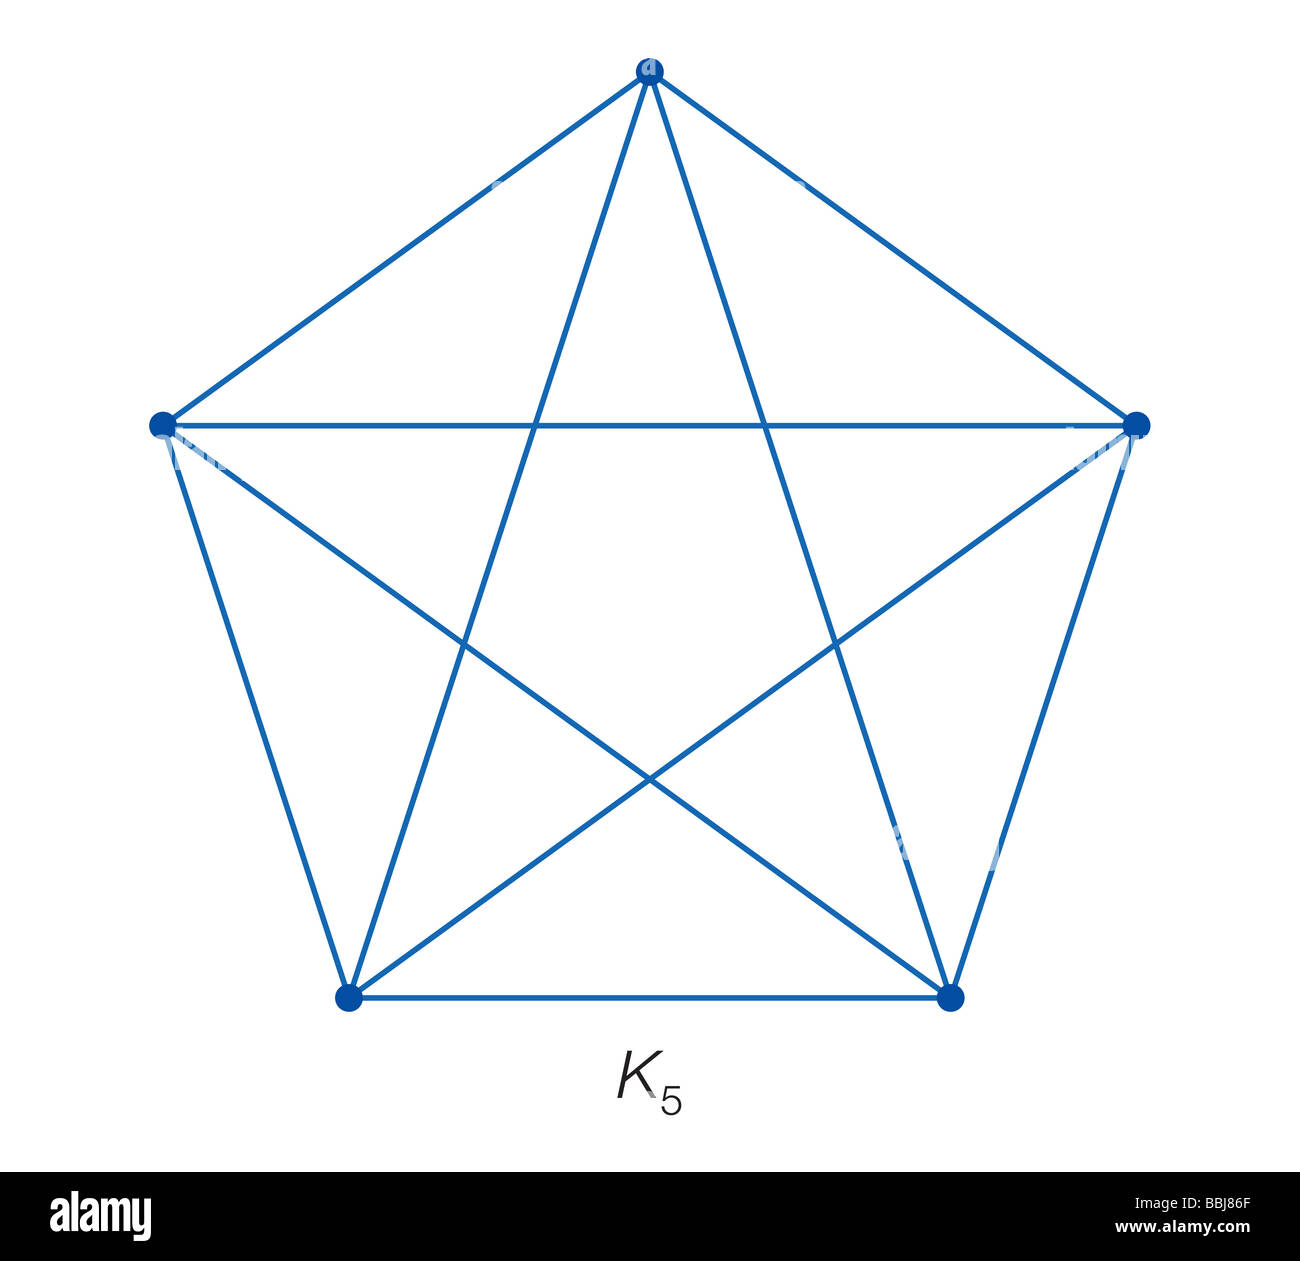 K5 non è un grafico planare, come non vi è alcun modo per collegare ogni vertice con bordi in piano in modo tale che i bordi non si intersecano. Foto Stock